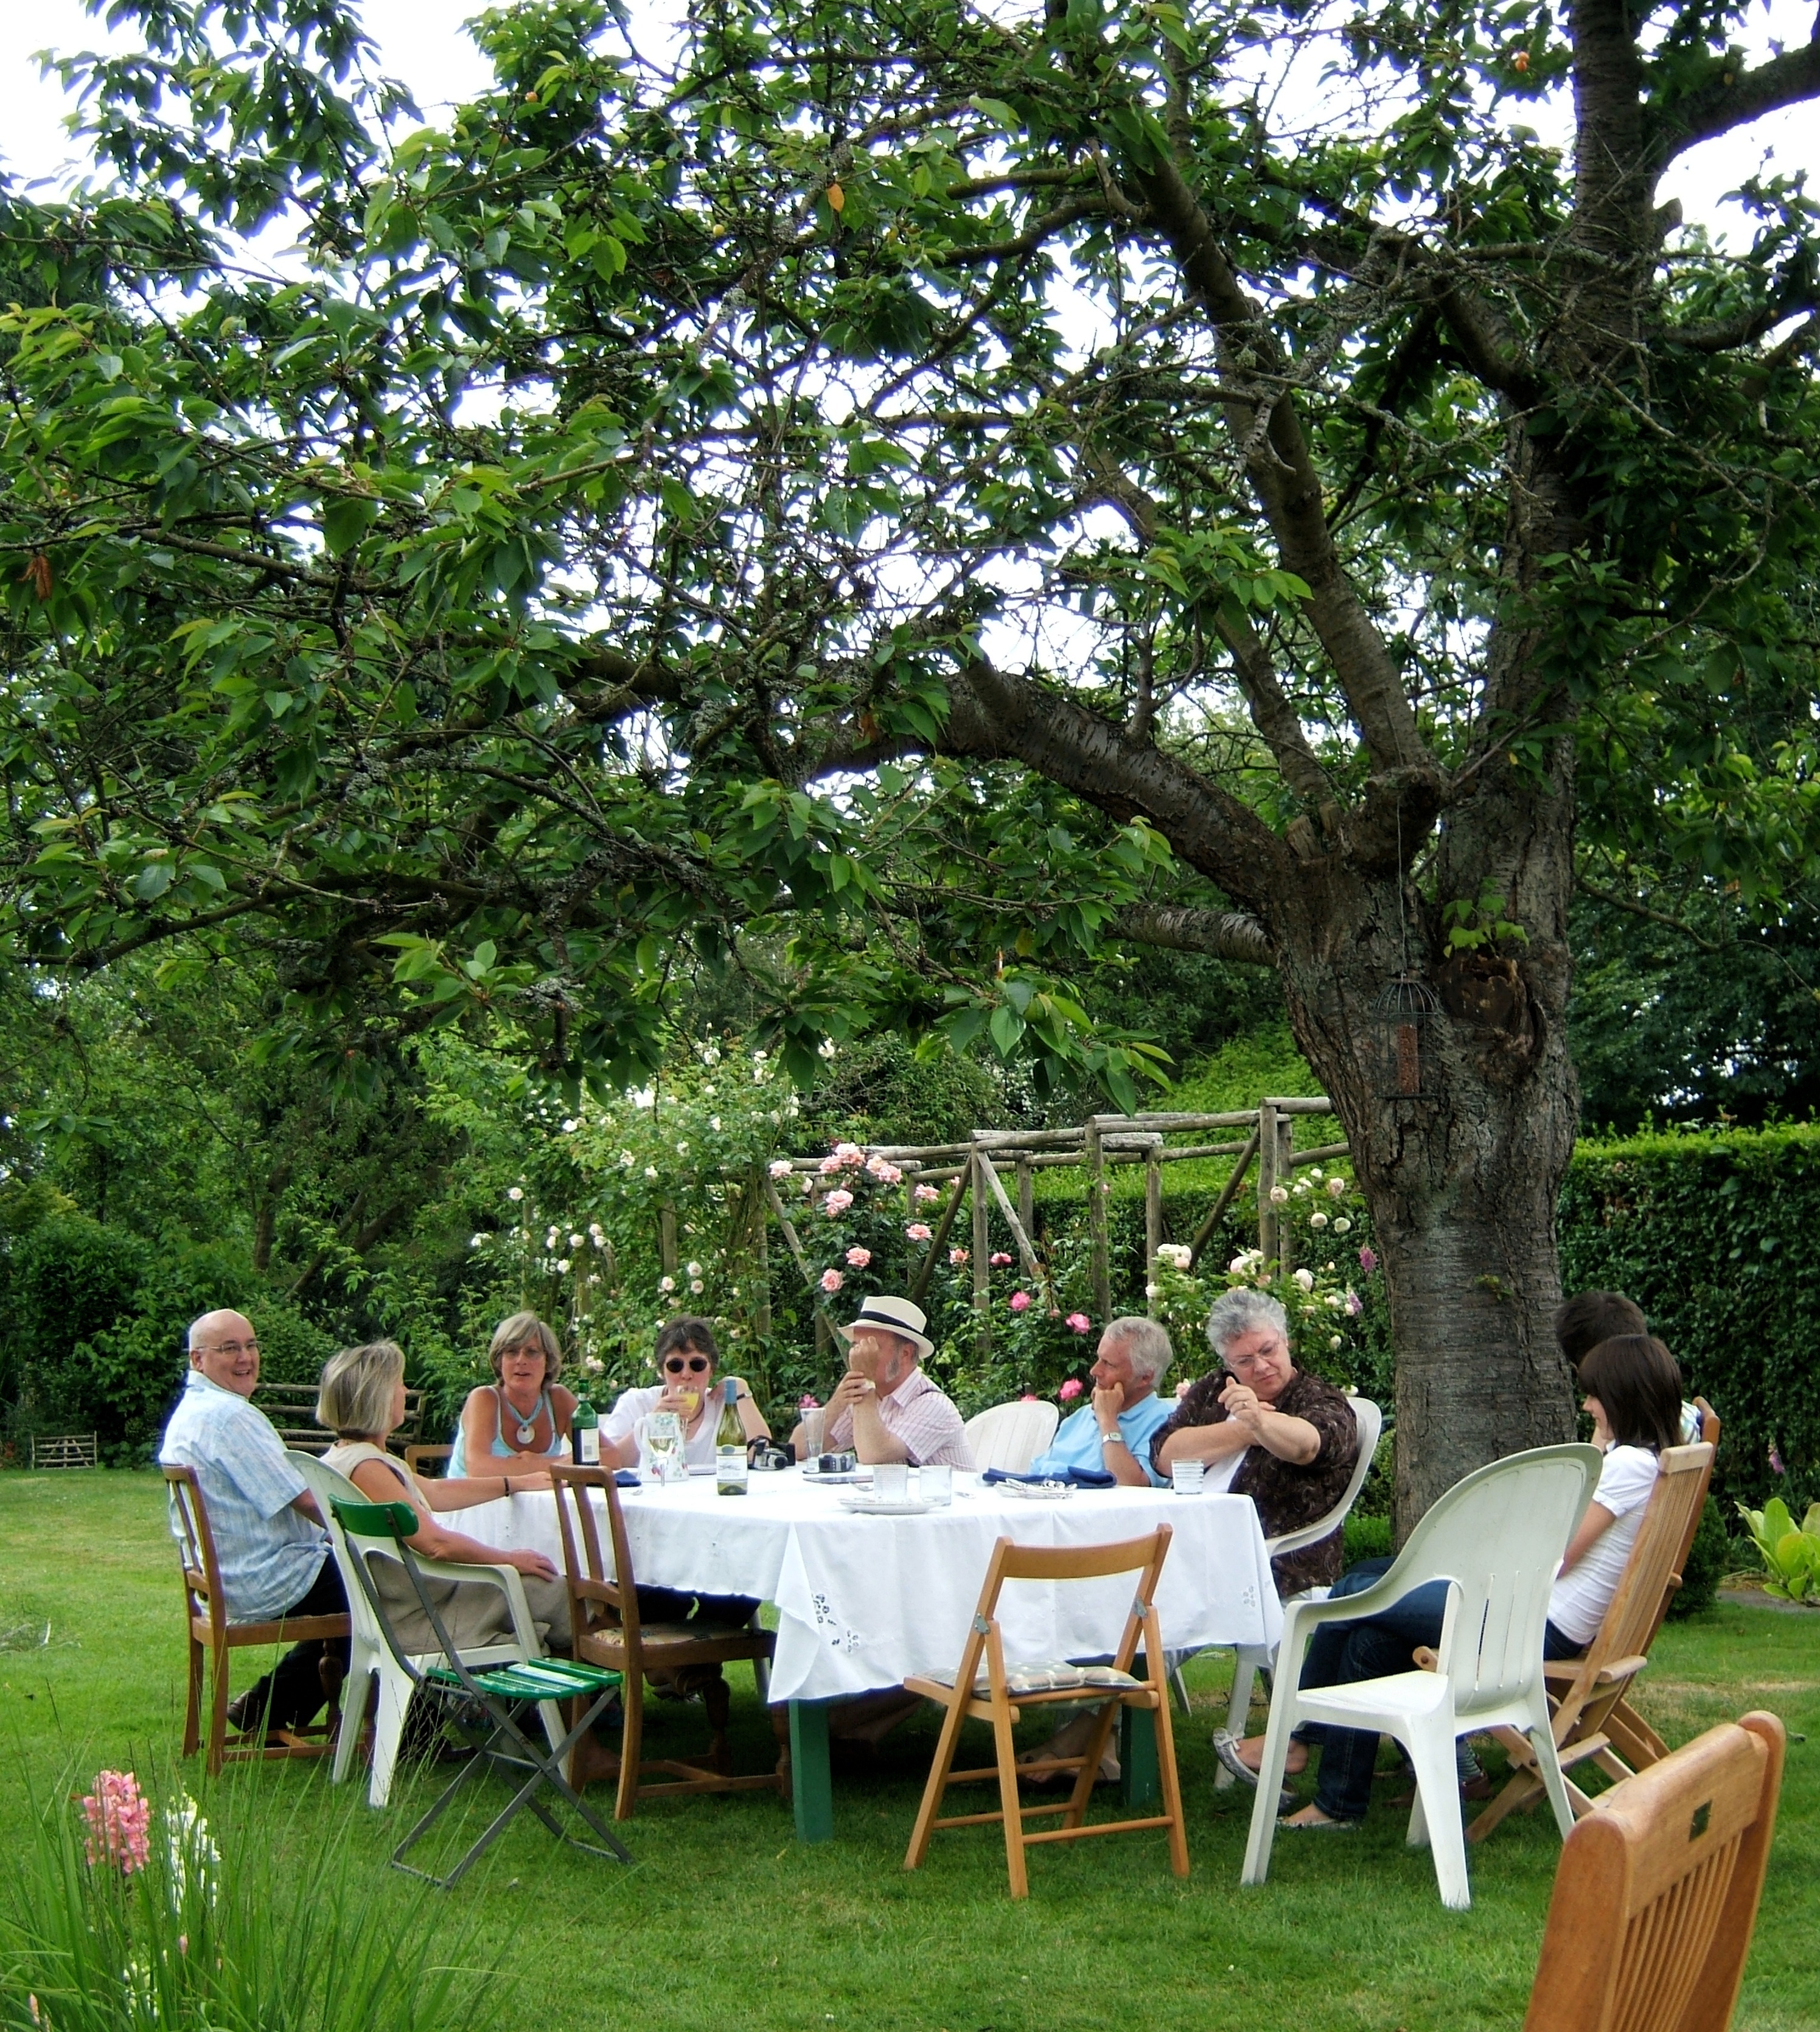 A family enjoying an alfresco dining in the backyard